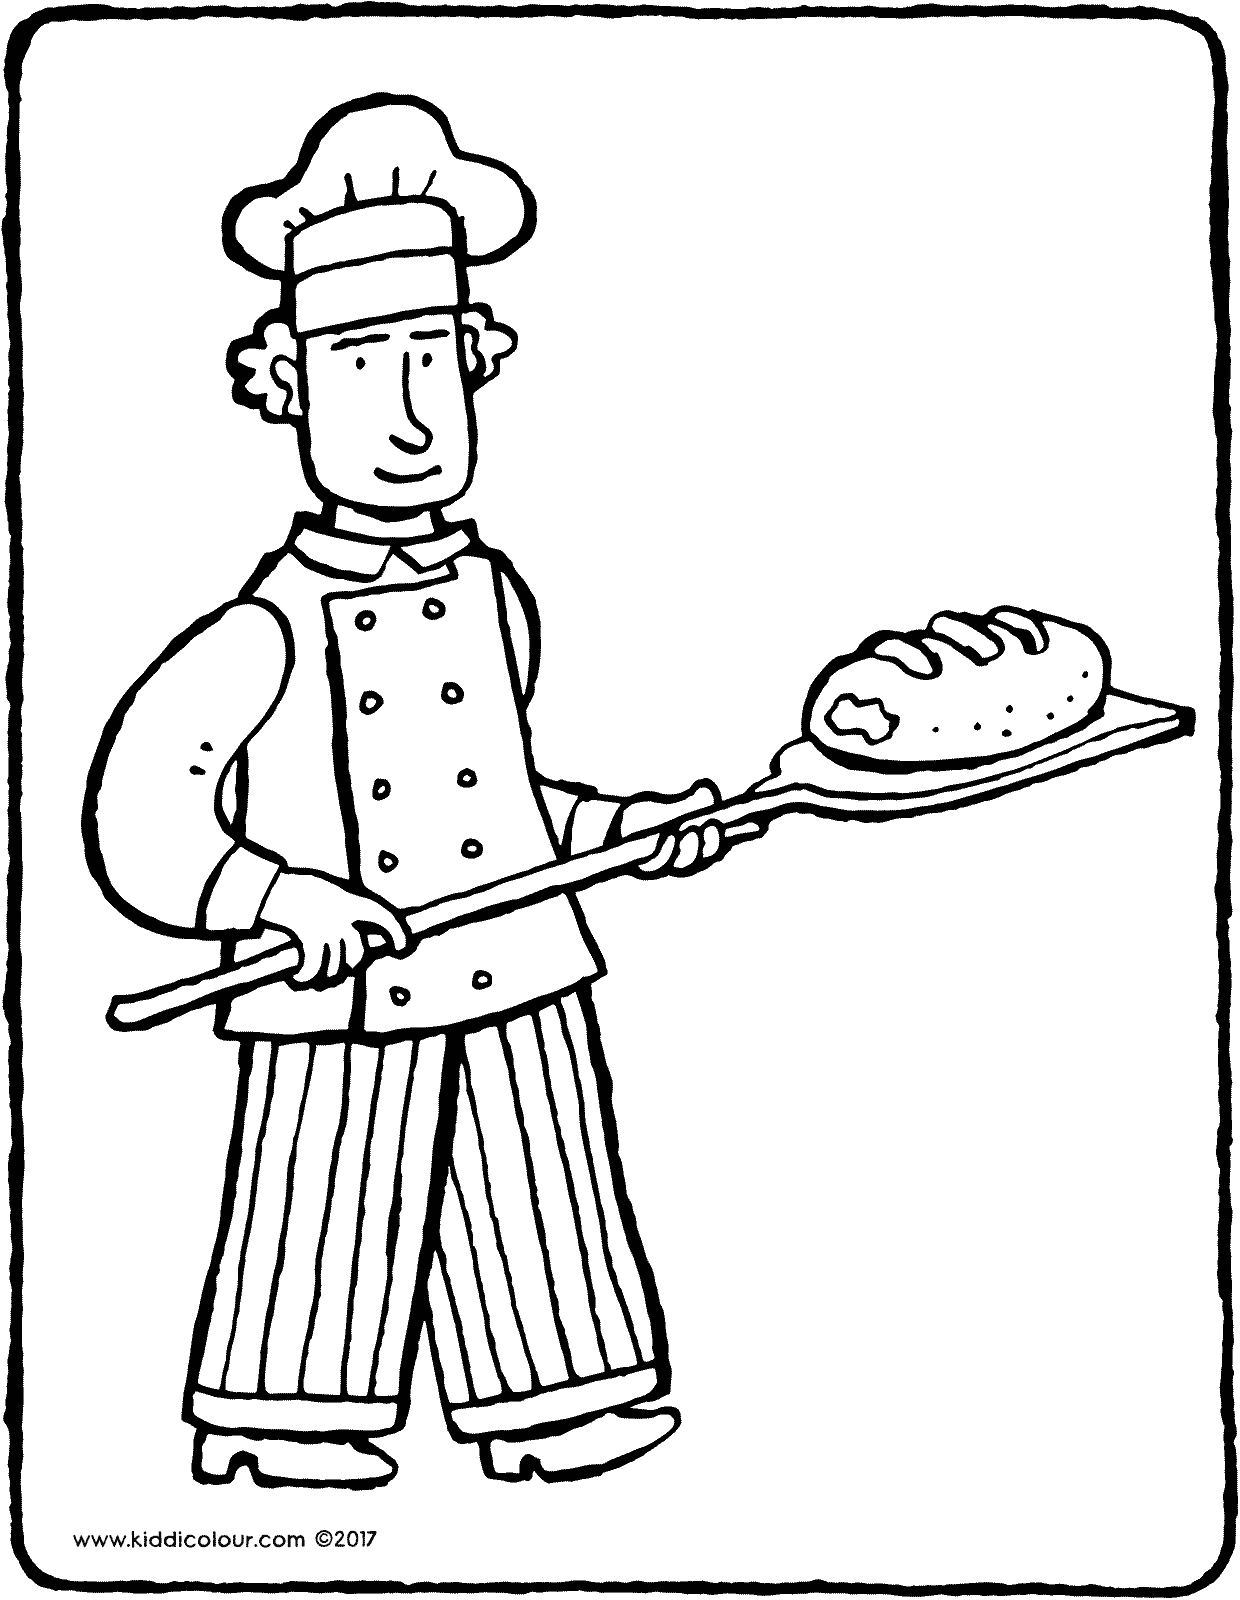 baker - kiddicolour